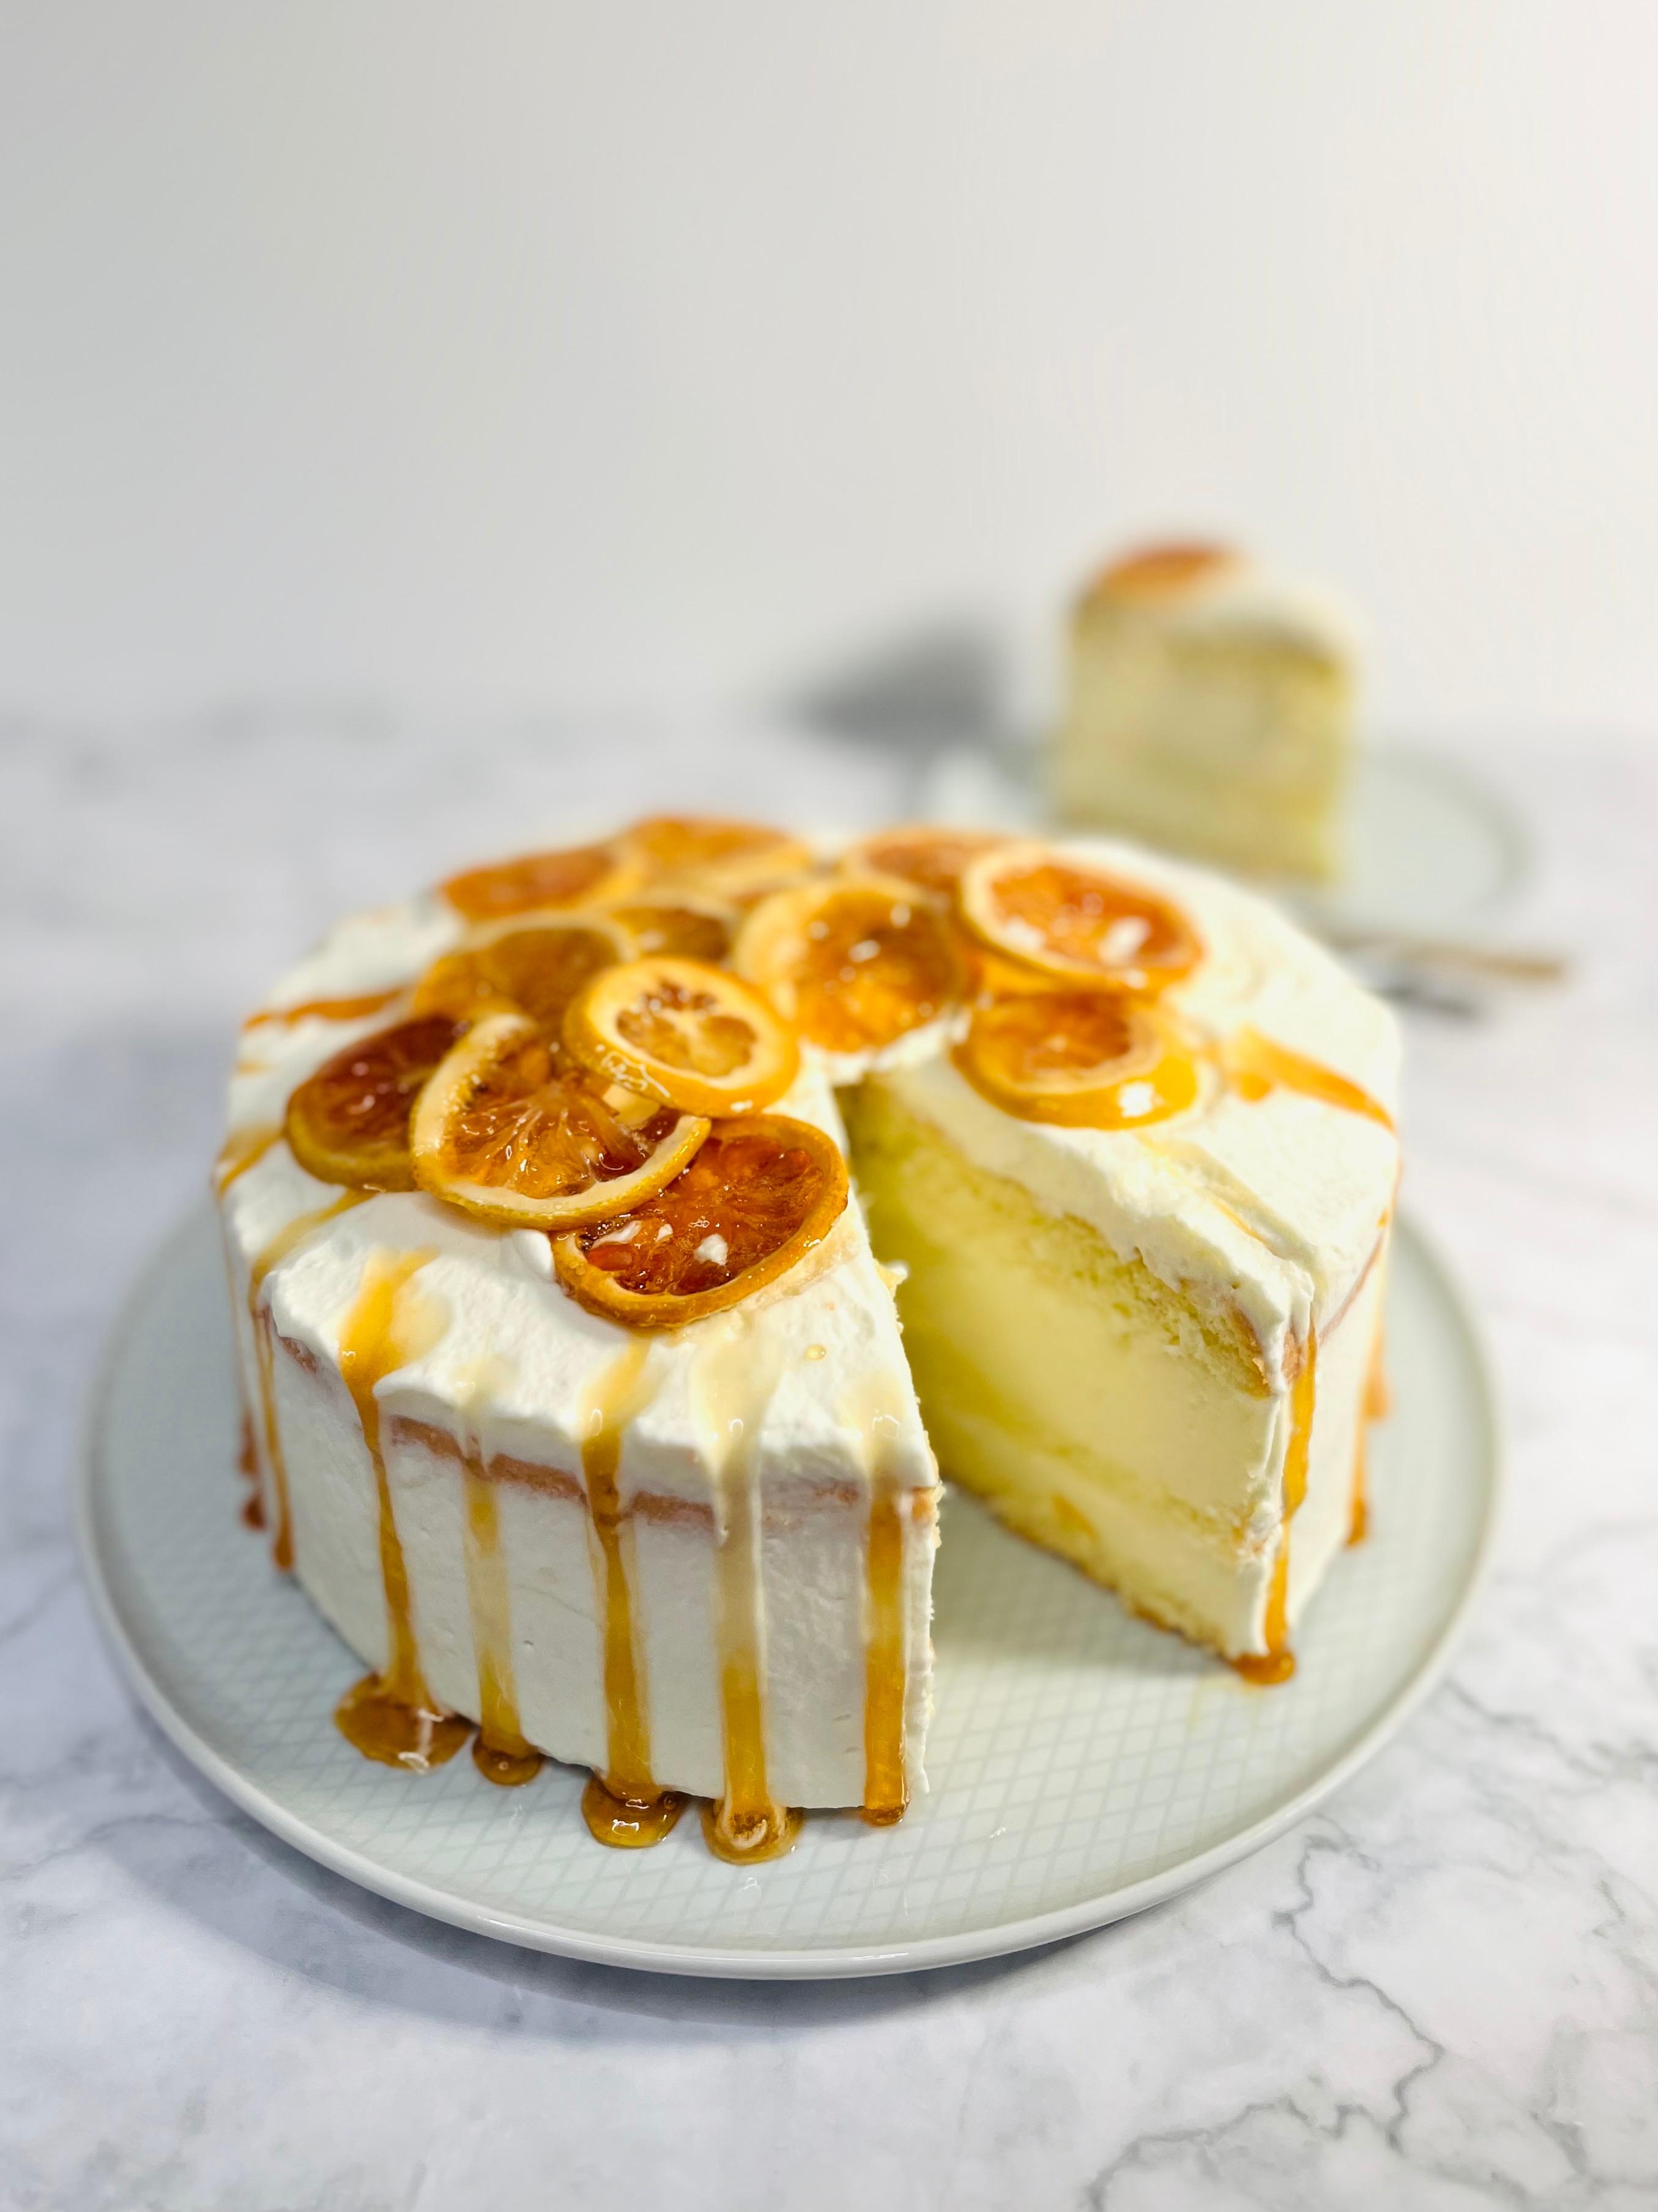 Happy Birthday to me.. 😌 Hier gibt es heute eine Limoncello-Torte mit karamellisierten Zitronen 🍋😋 #torte #couchliebt #lecker #geburtstag 